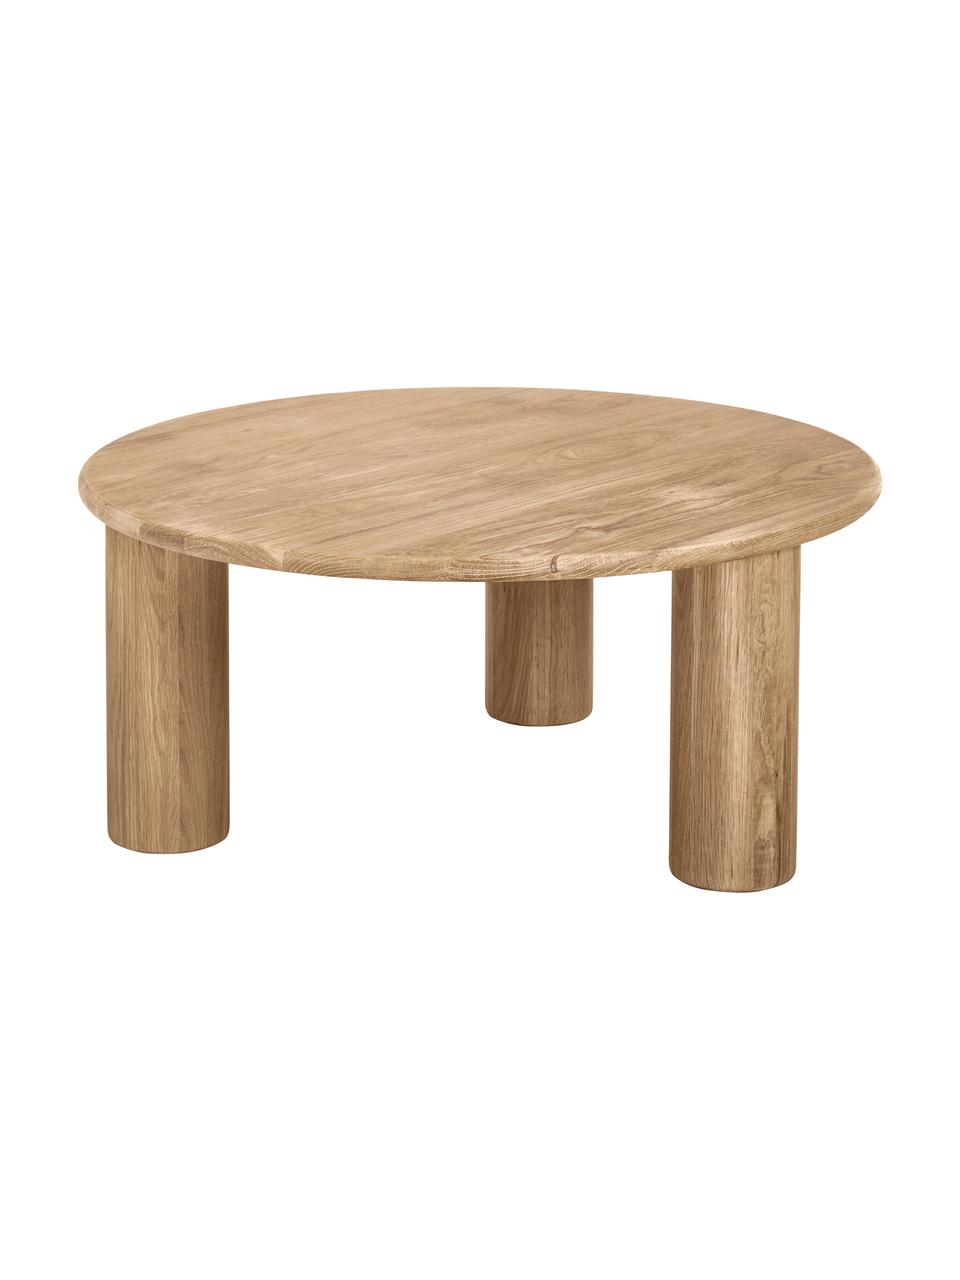 Table basse ronde bois de chêne Didi, Bois de chêne massif, huilé, Bois de chêne, Ø 80 cm